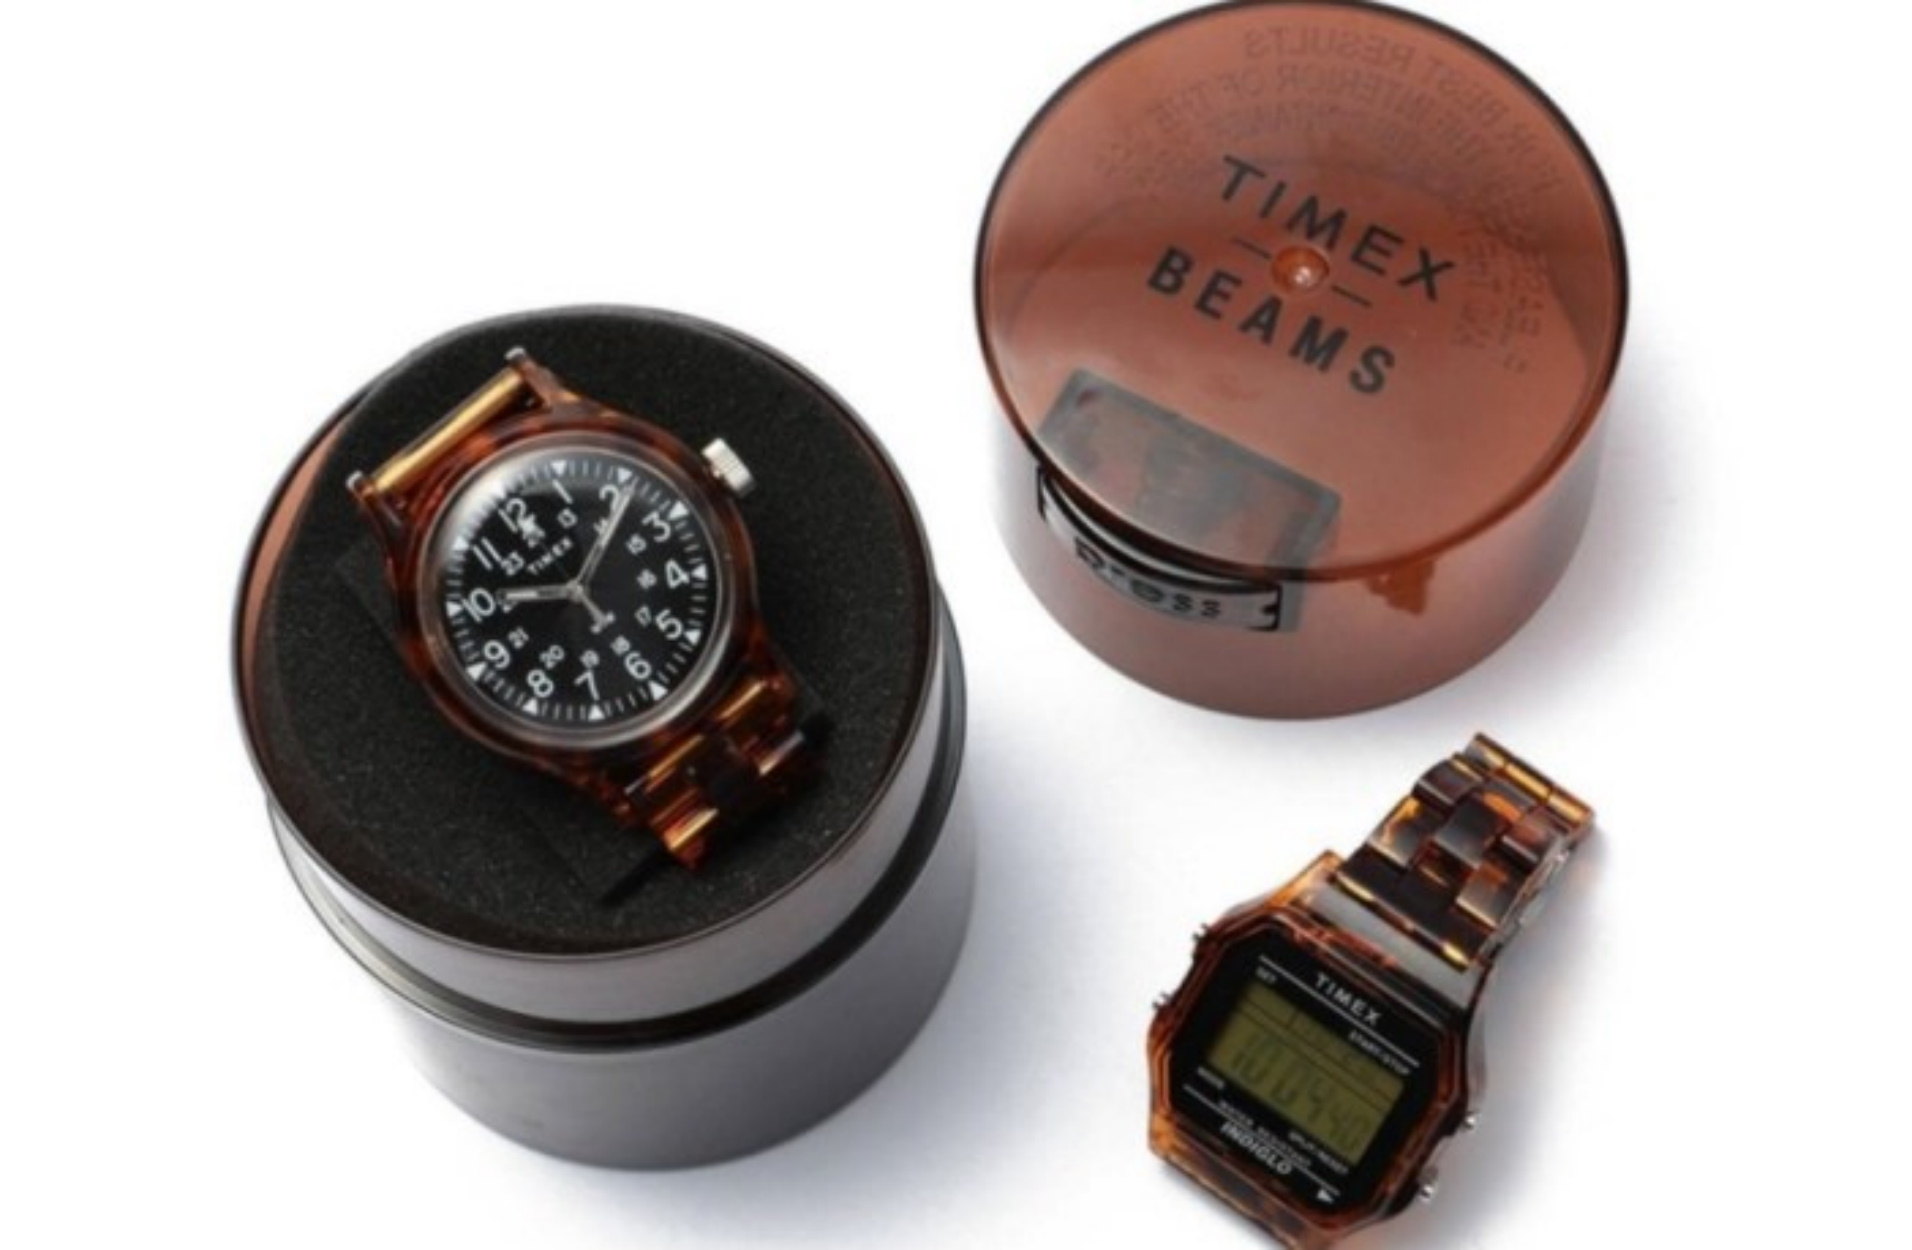 Η Timex κυκλοφόρησε δύο νέα ρετρό και προσιτά ρολόγια σε συνεργασία με την BEAMS